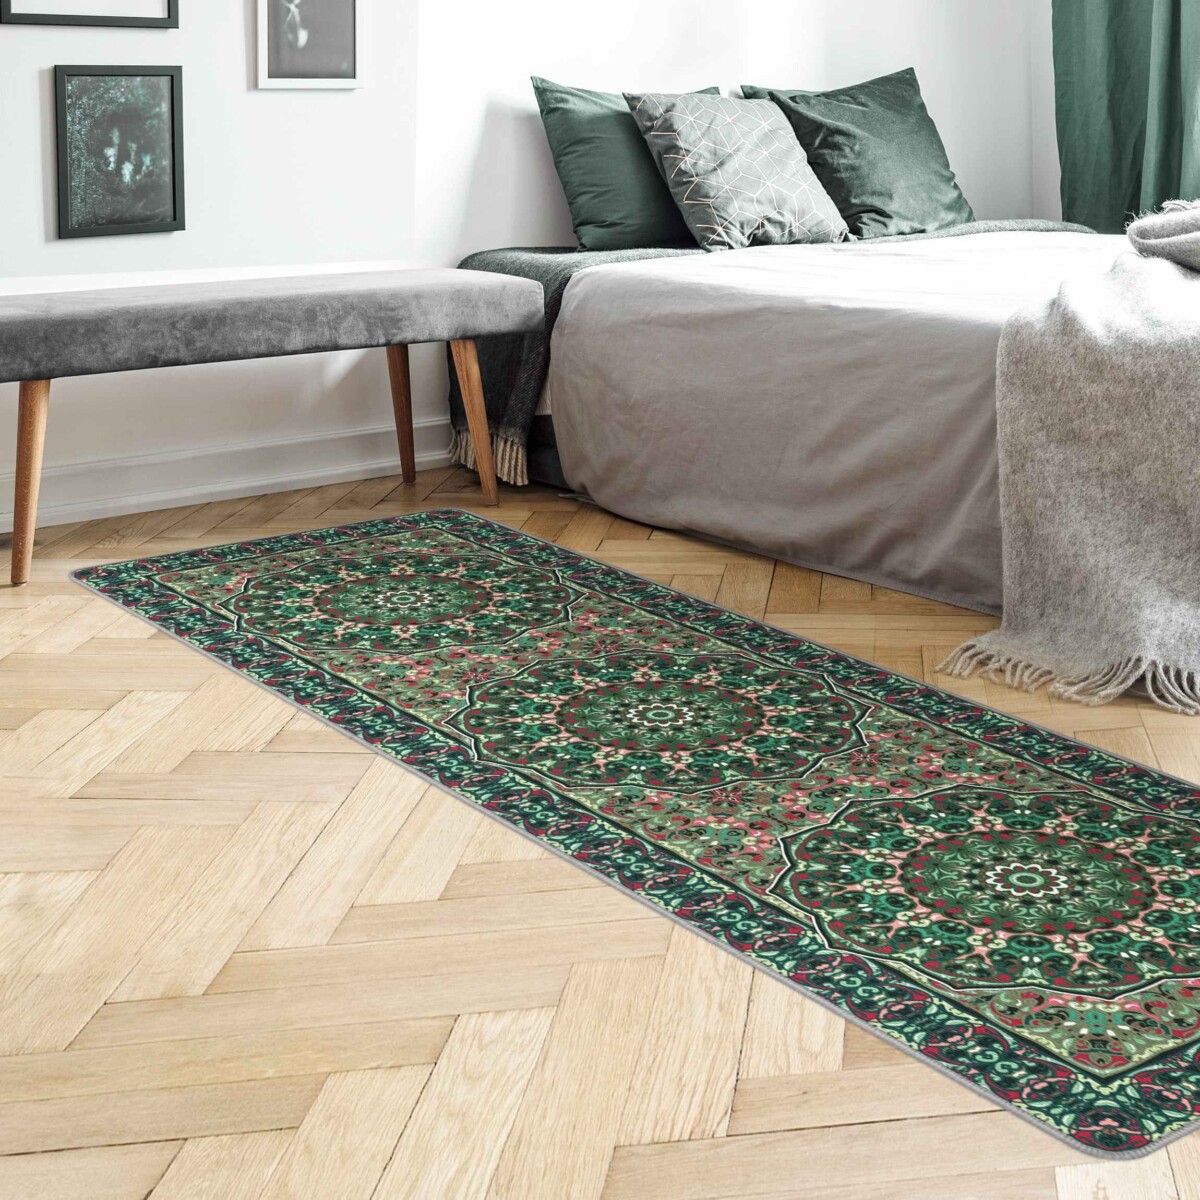 Schöne Farben fürs Schlafzimmer – Teppich Skandinavisches Muster Waldgrün